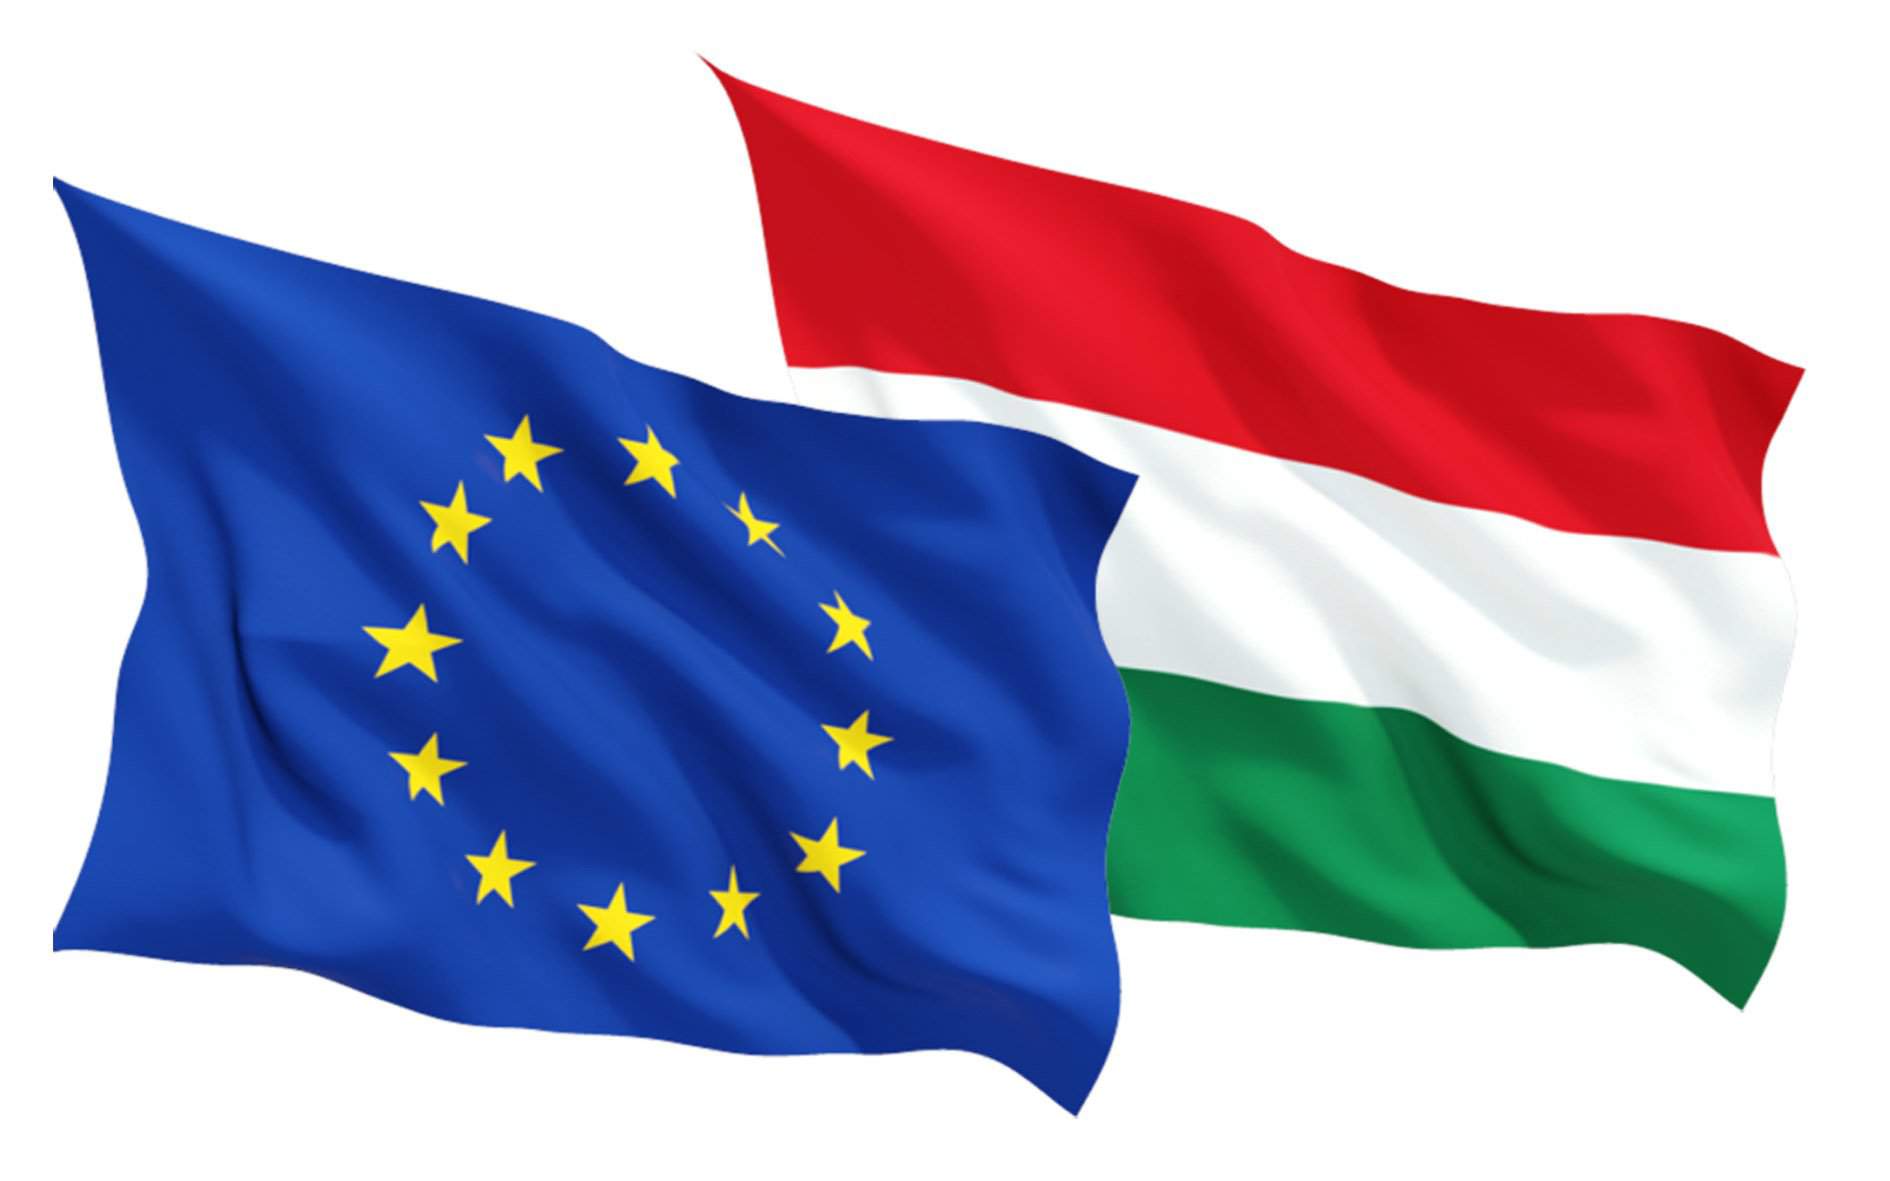 bandera de la UE